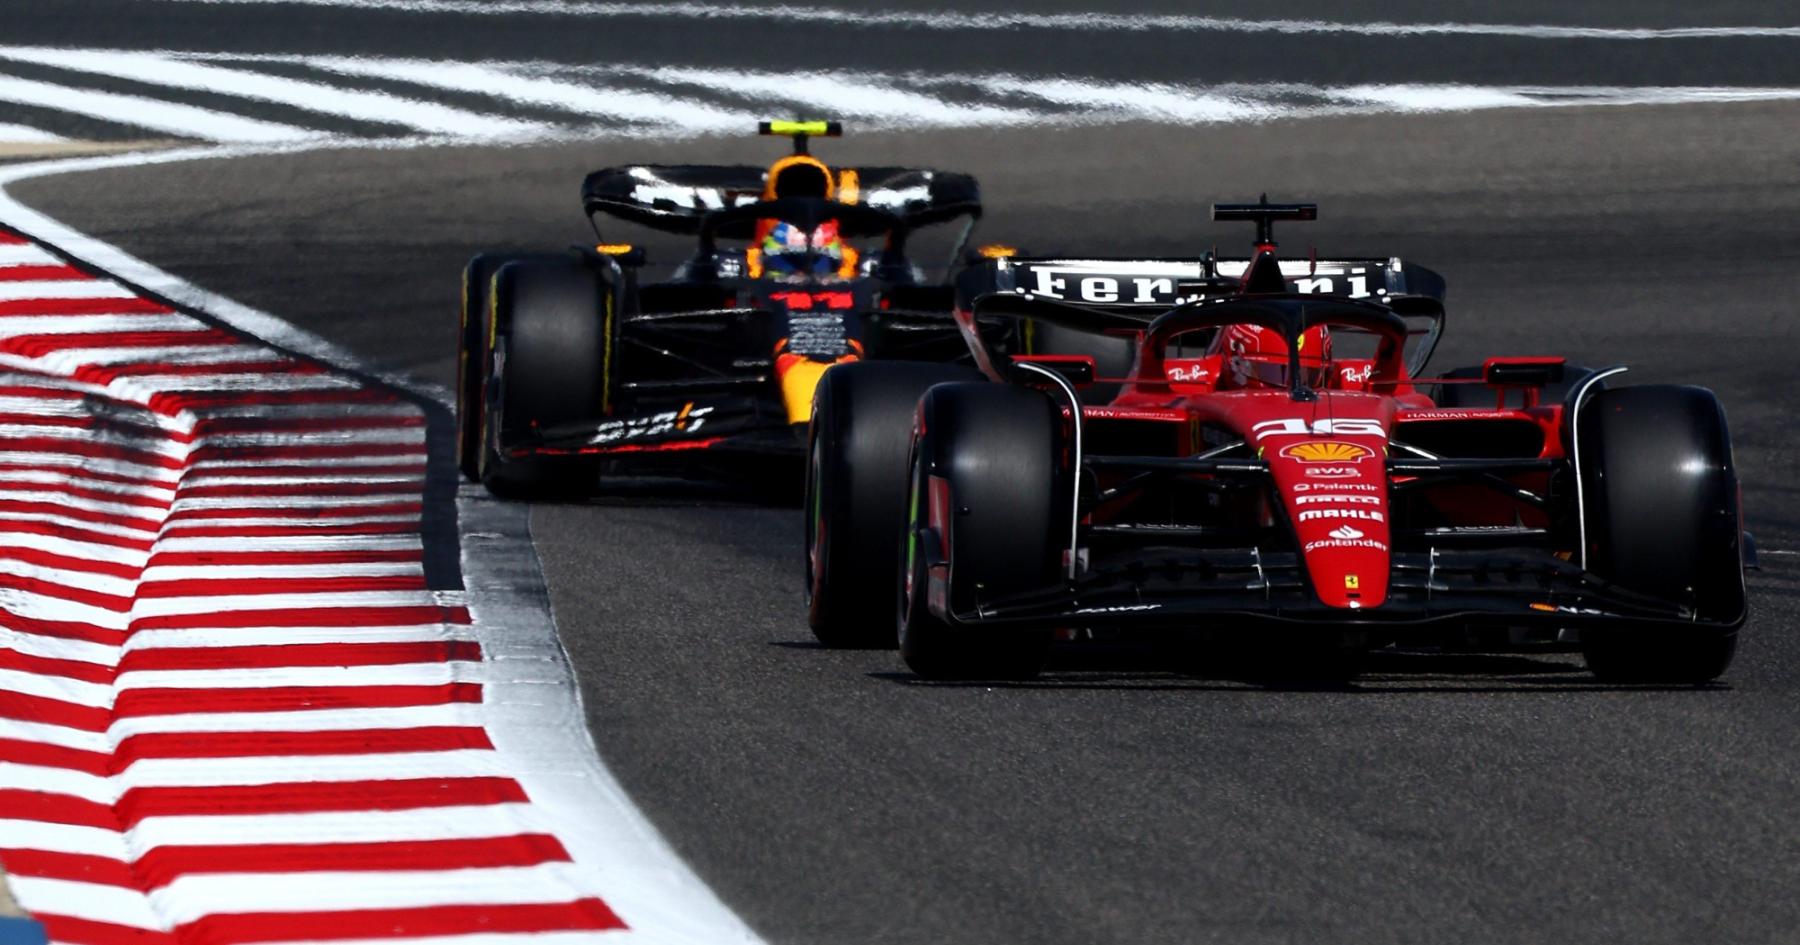 Why is F1 pre-season testing held in Bahrain?